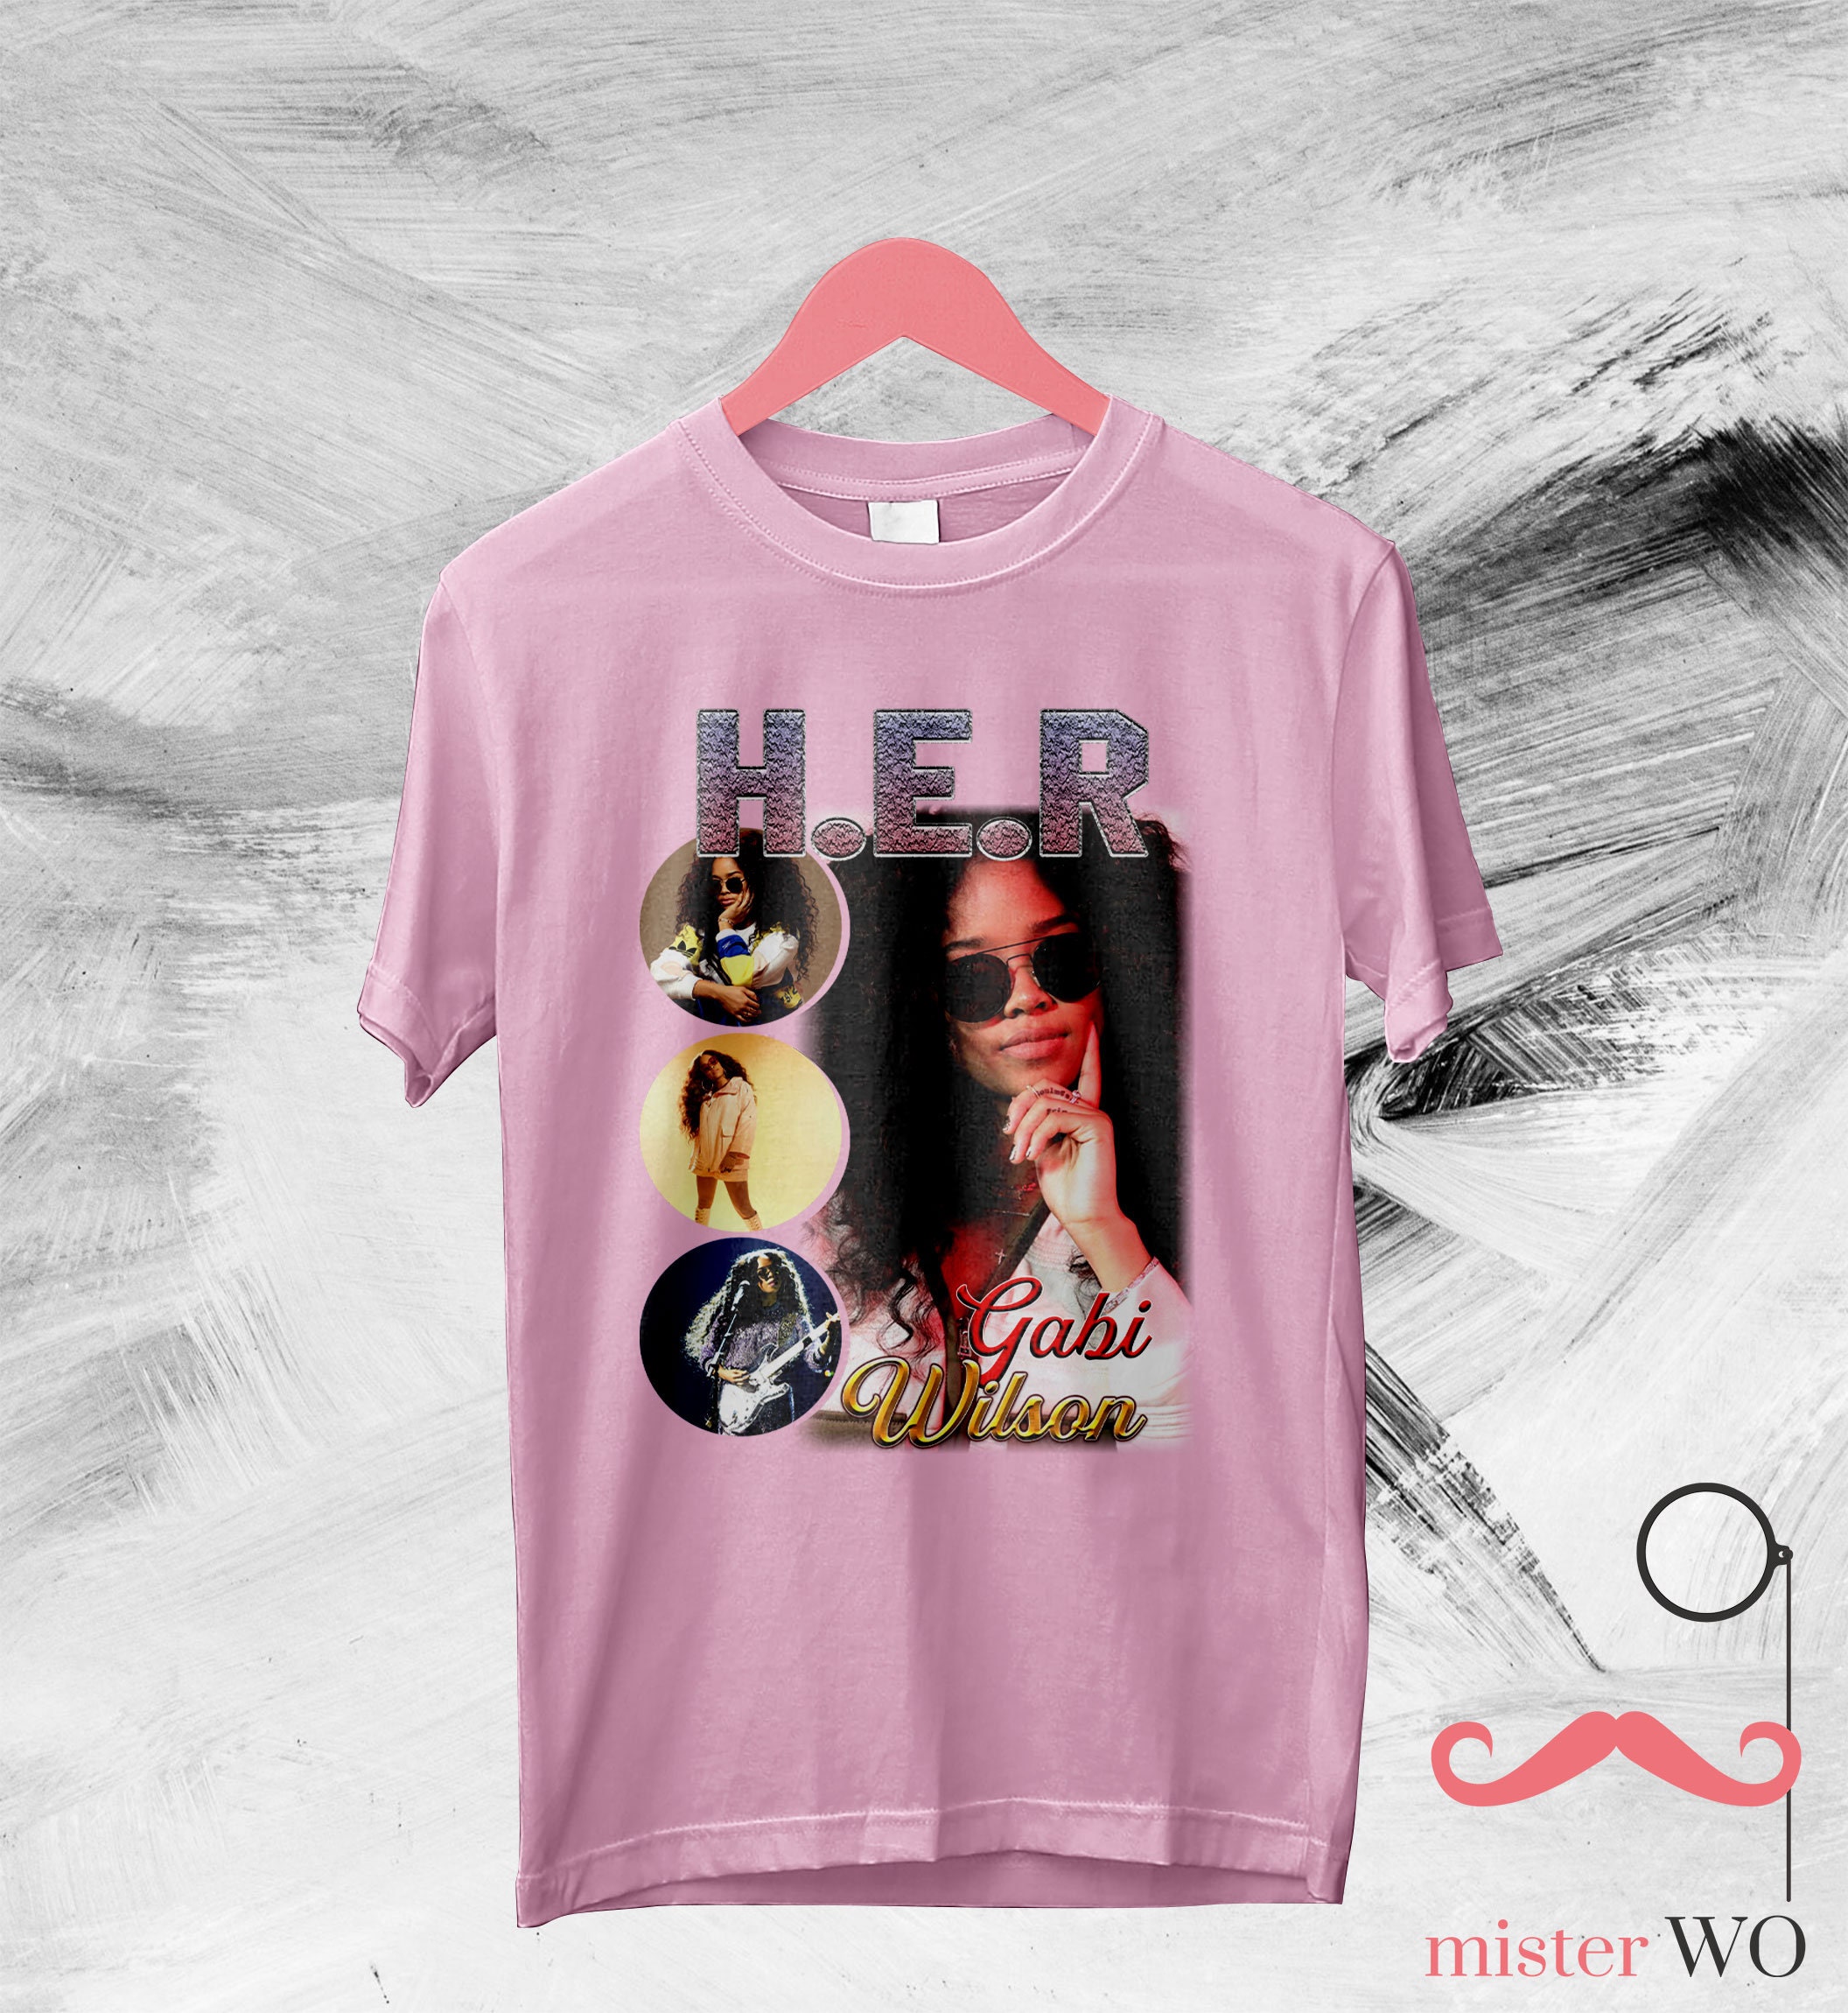 Discover H.E.R. Vintage 90's T-shirt - Gabriella Wilson Shirt, Gabi Wilson Tour